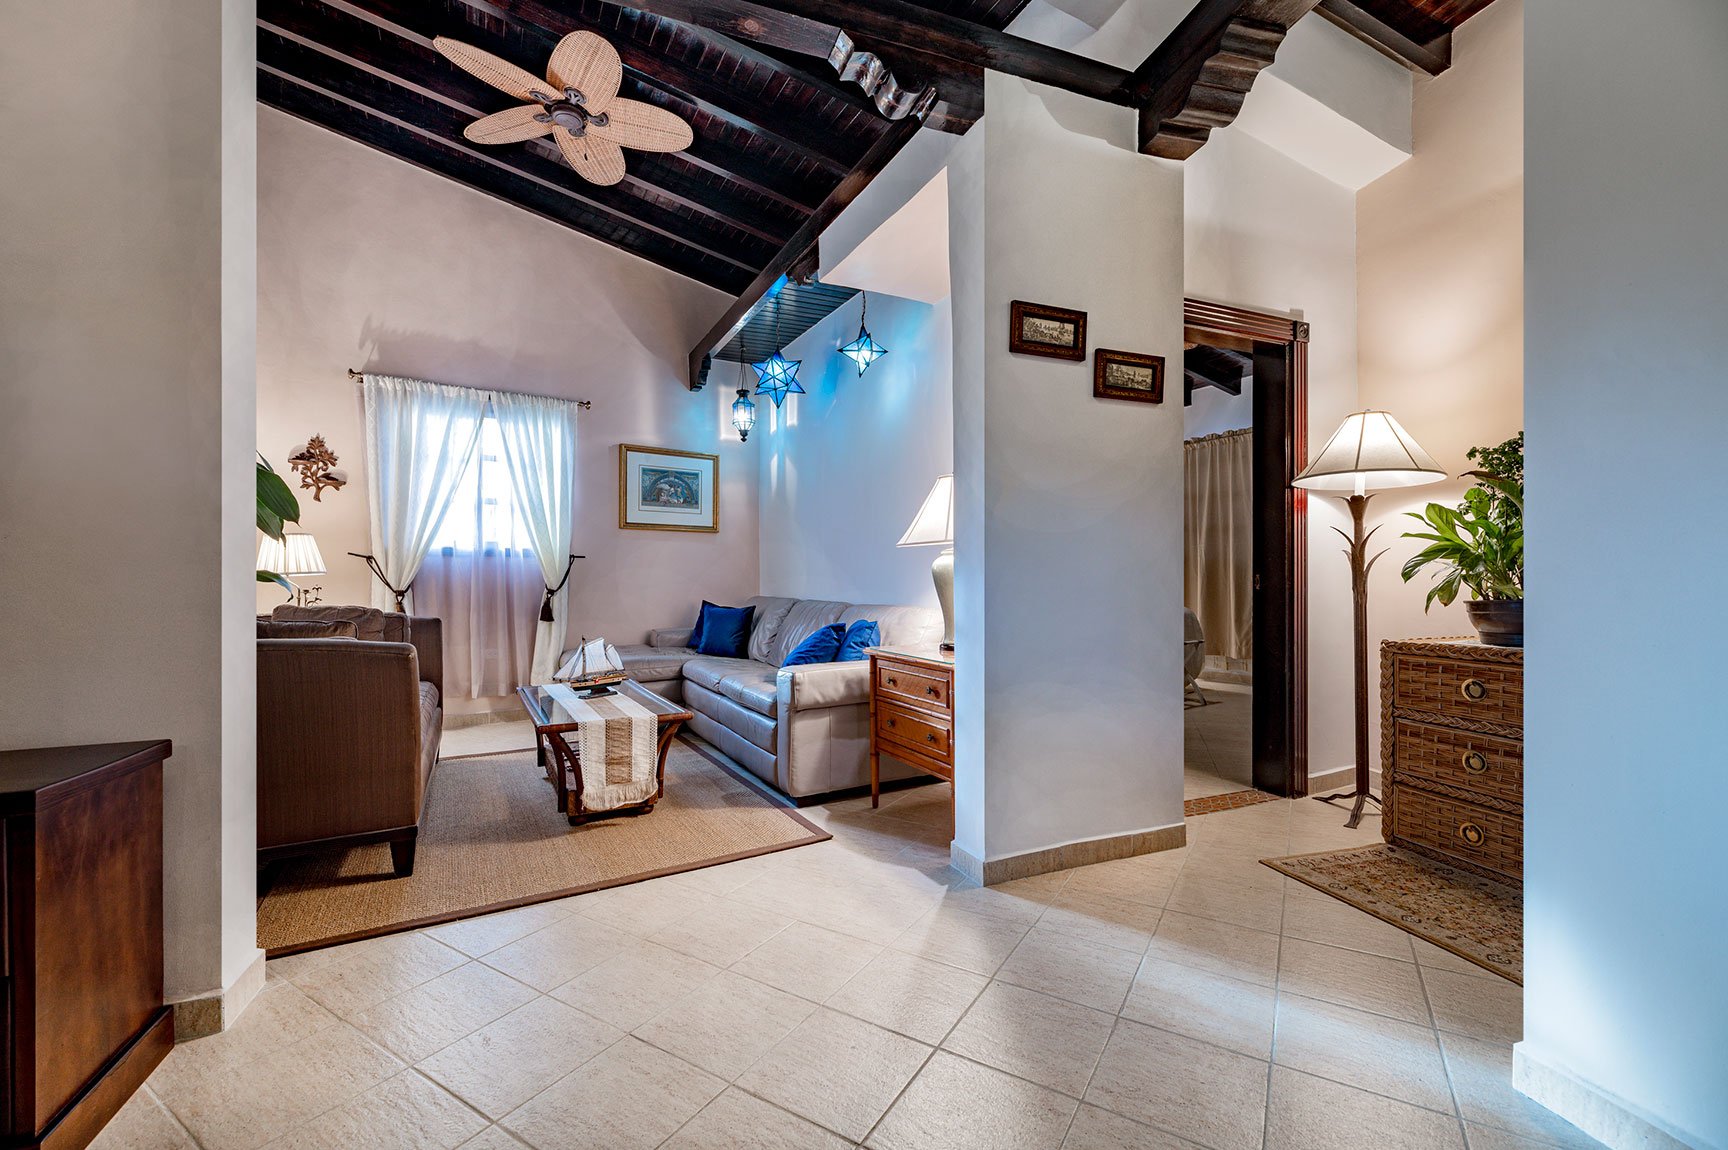 The Living Area in the Villa at Vientos del Caribe